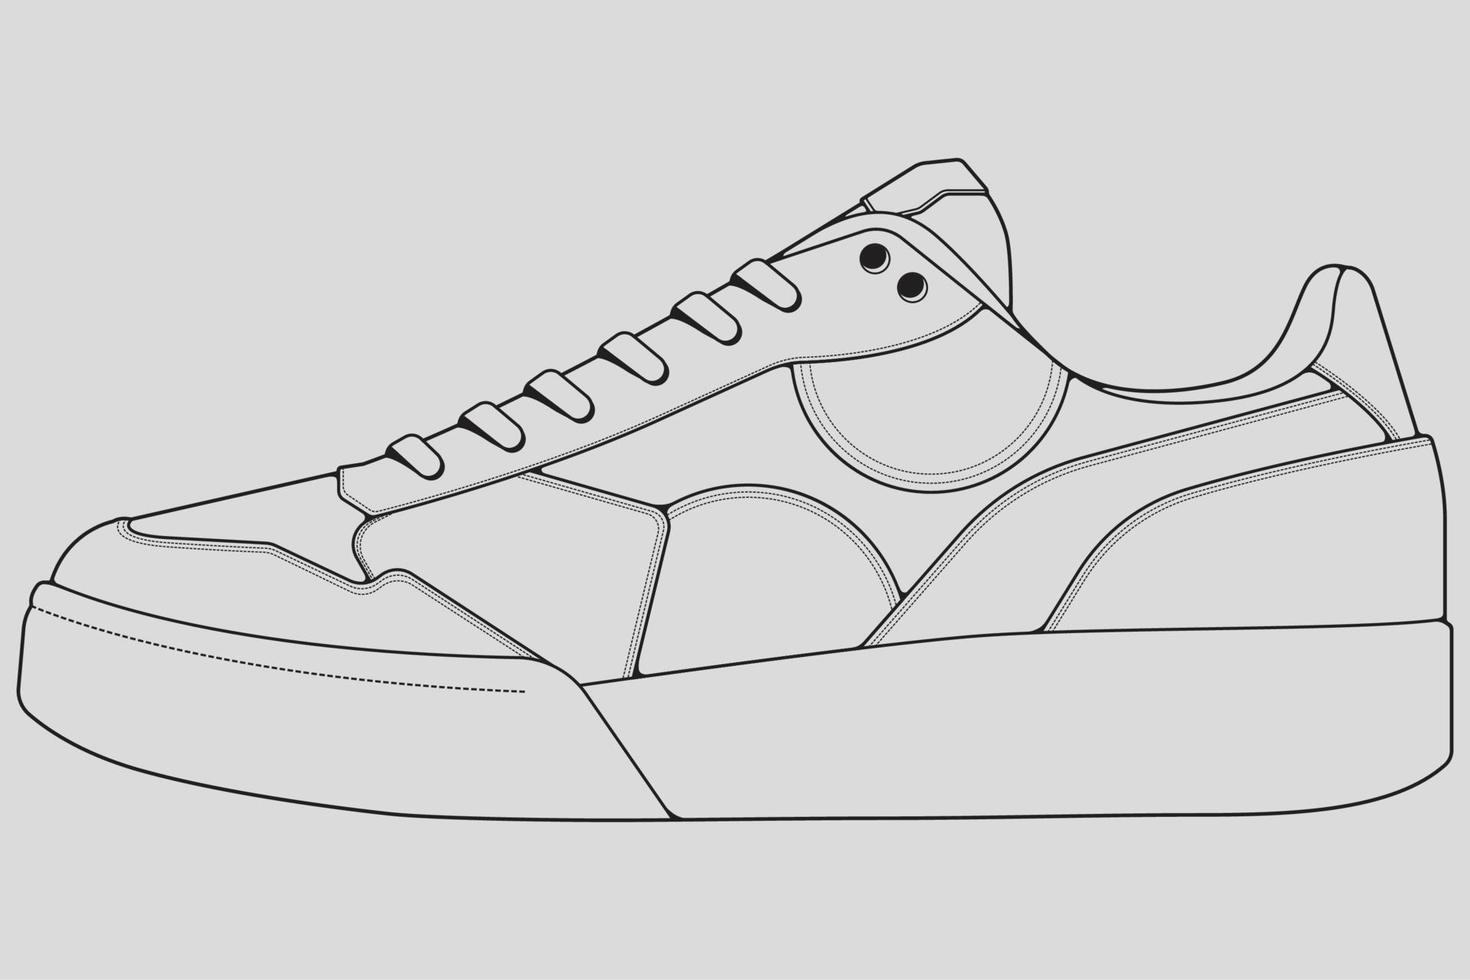 Schuhe Sneaker Umrisszeichnung Vektor, Turnschuhe in einem Skizzenstil gezeichnet, schwarze Linie Sneaker Turnschuhe Vorlagenumriss, Vektorillustration. vektor